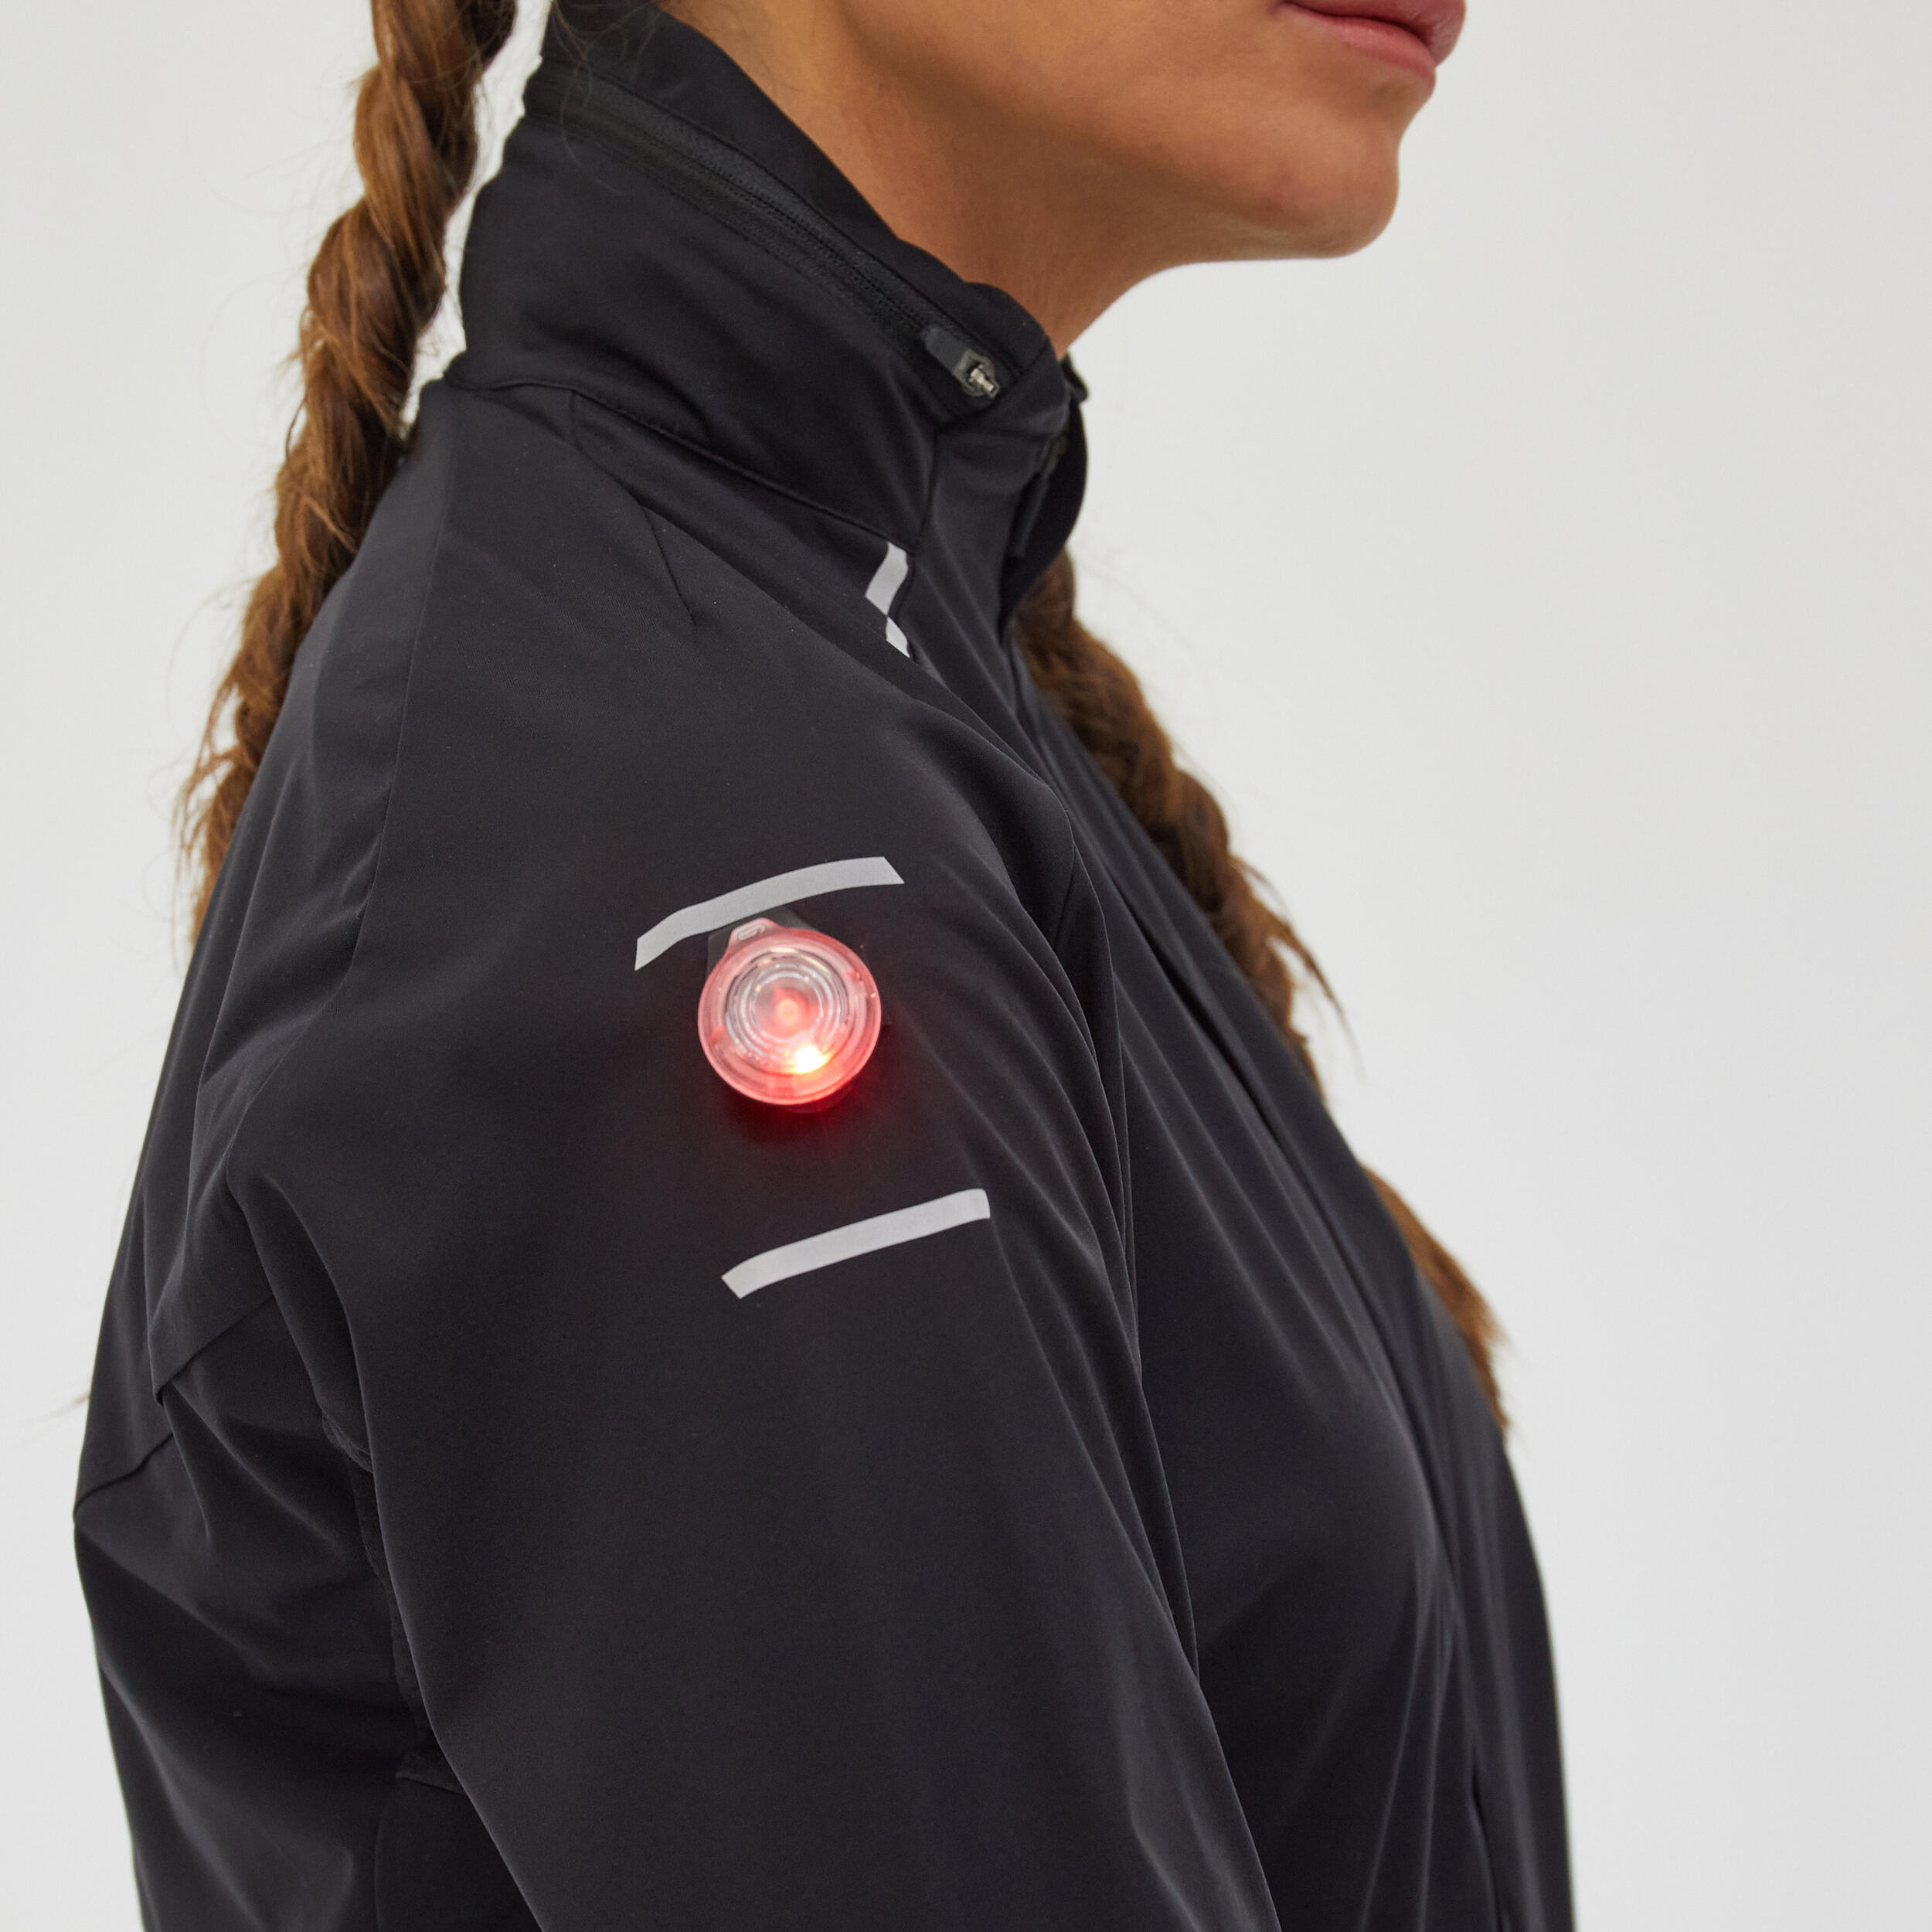 Kiprun Warm Regul Women's Running Water Repellent Windproof Jacket - Black 10/12